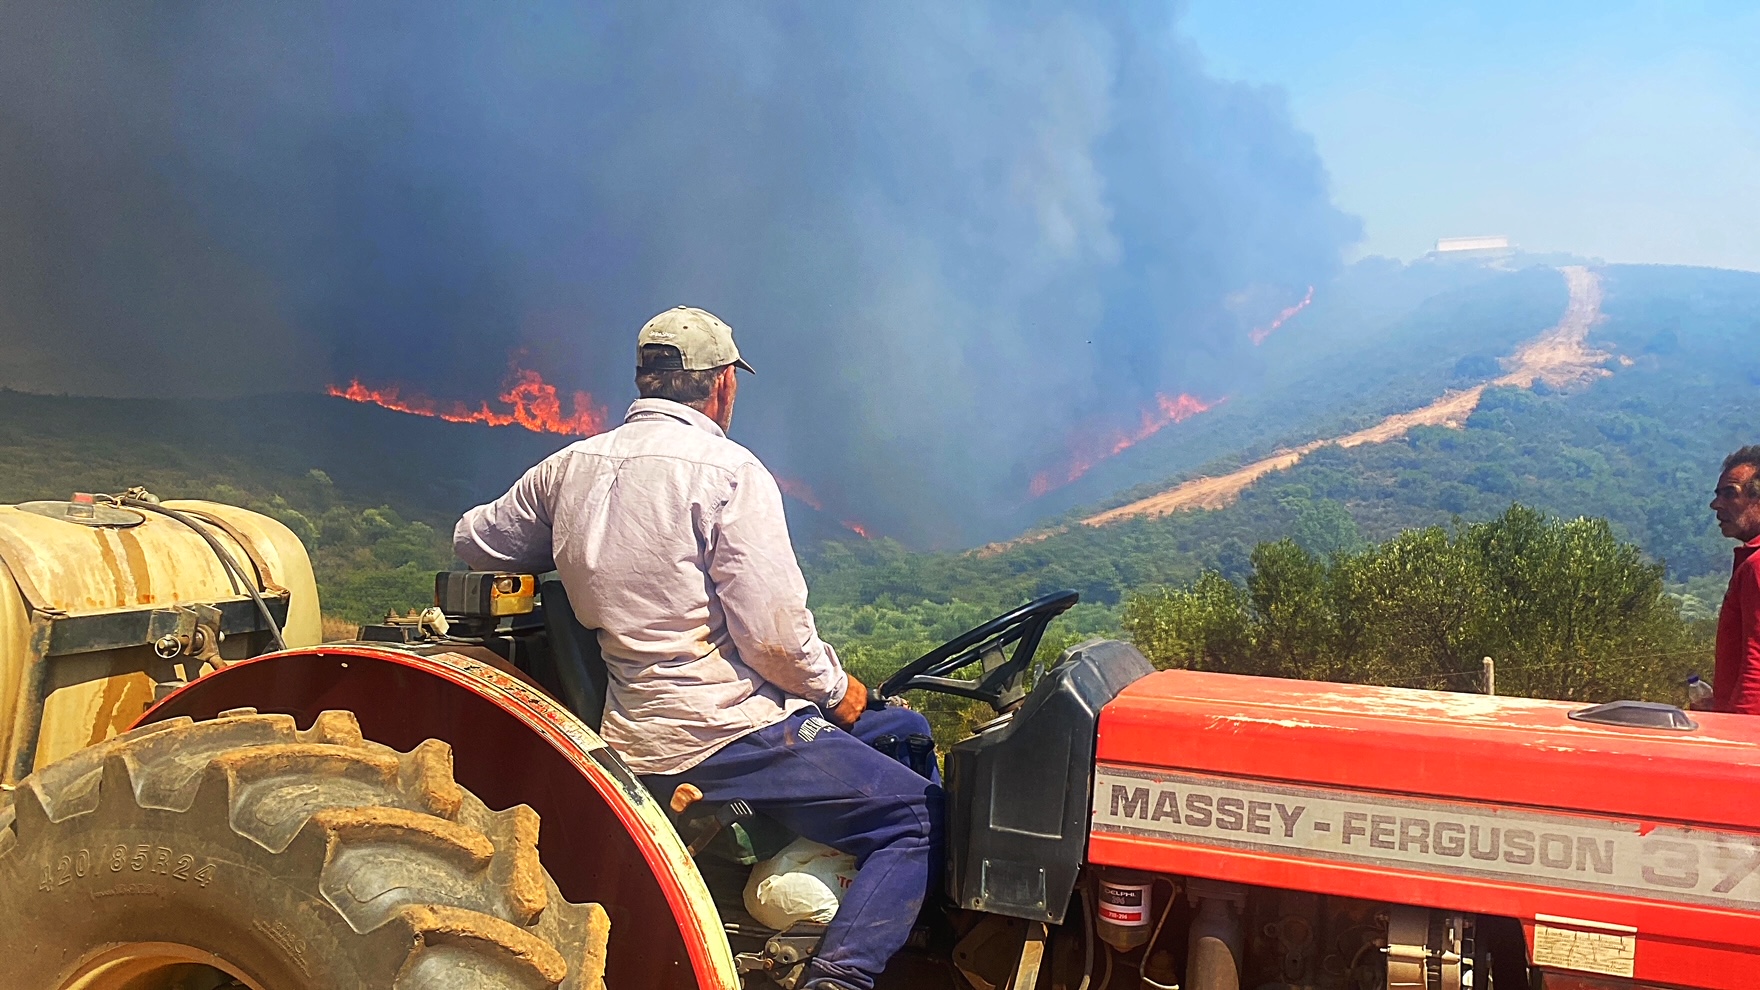 Λακωνία: Ξεκινά η χορήγηση αποζημιώσεων για την πυρκαγιά στο Δαφνί